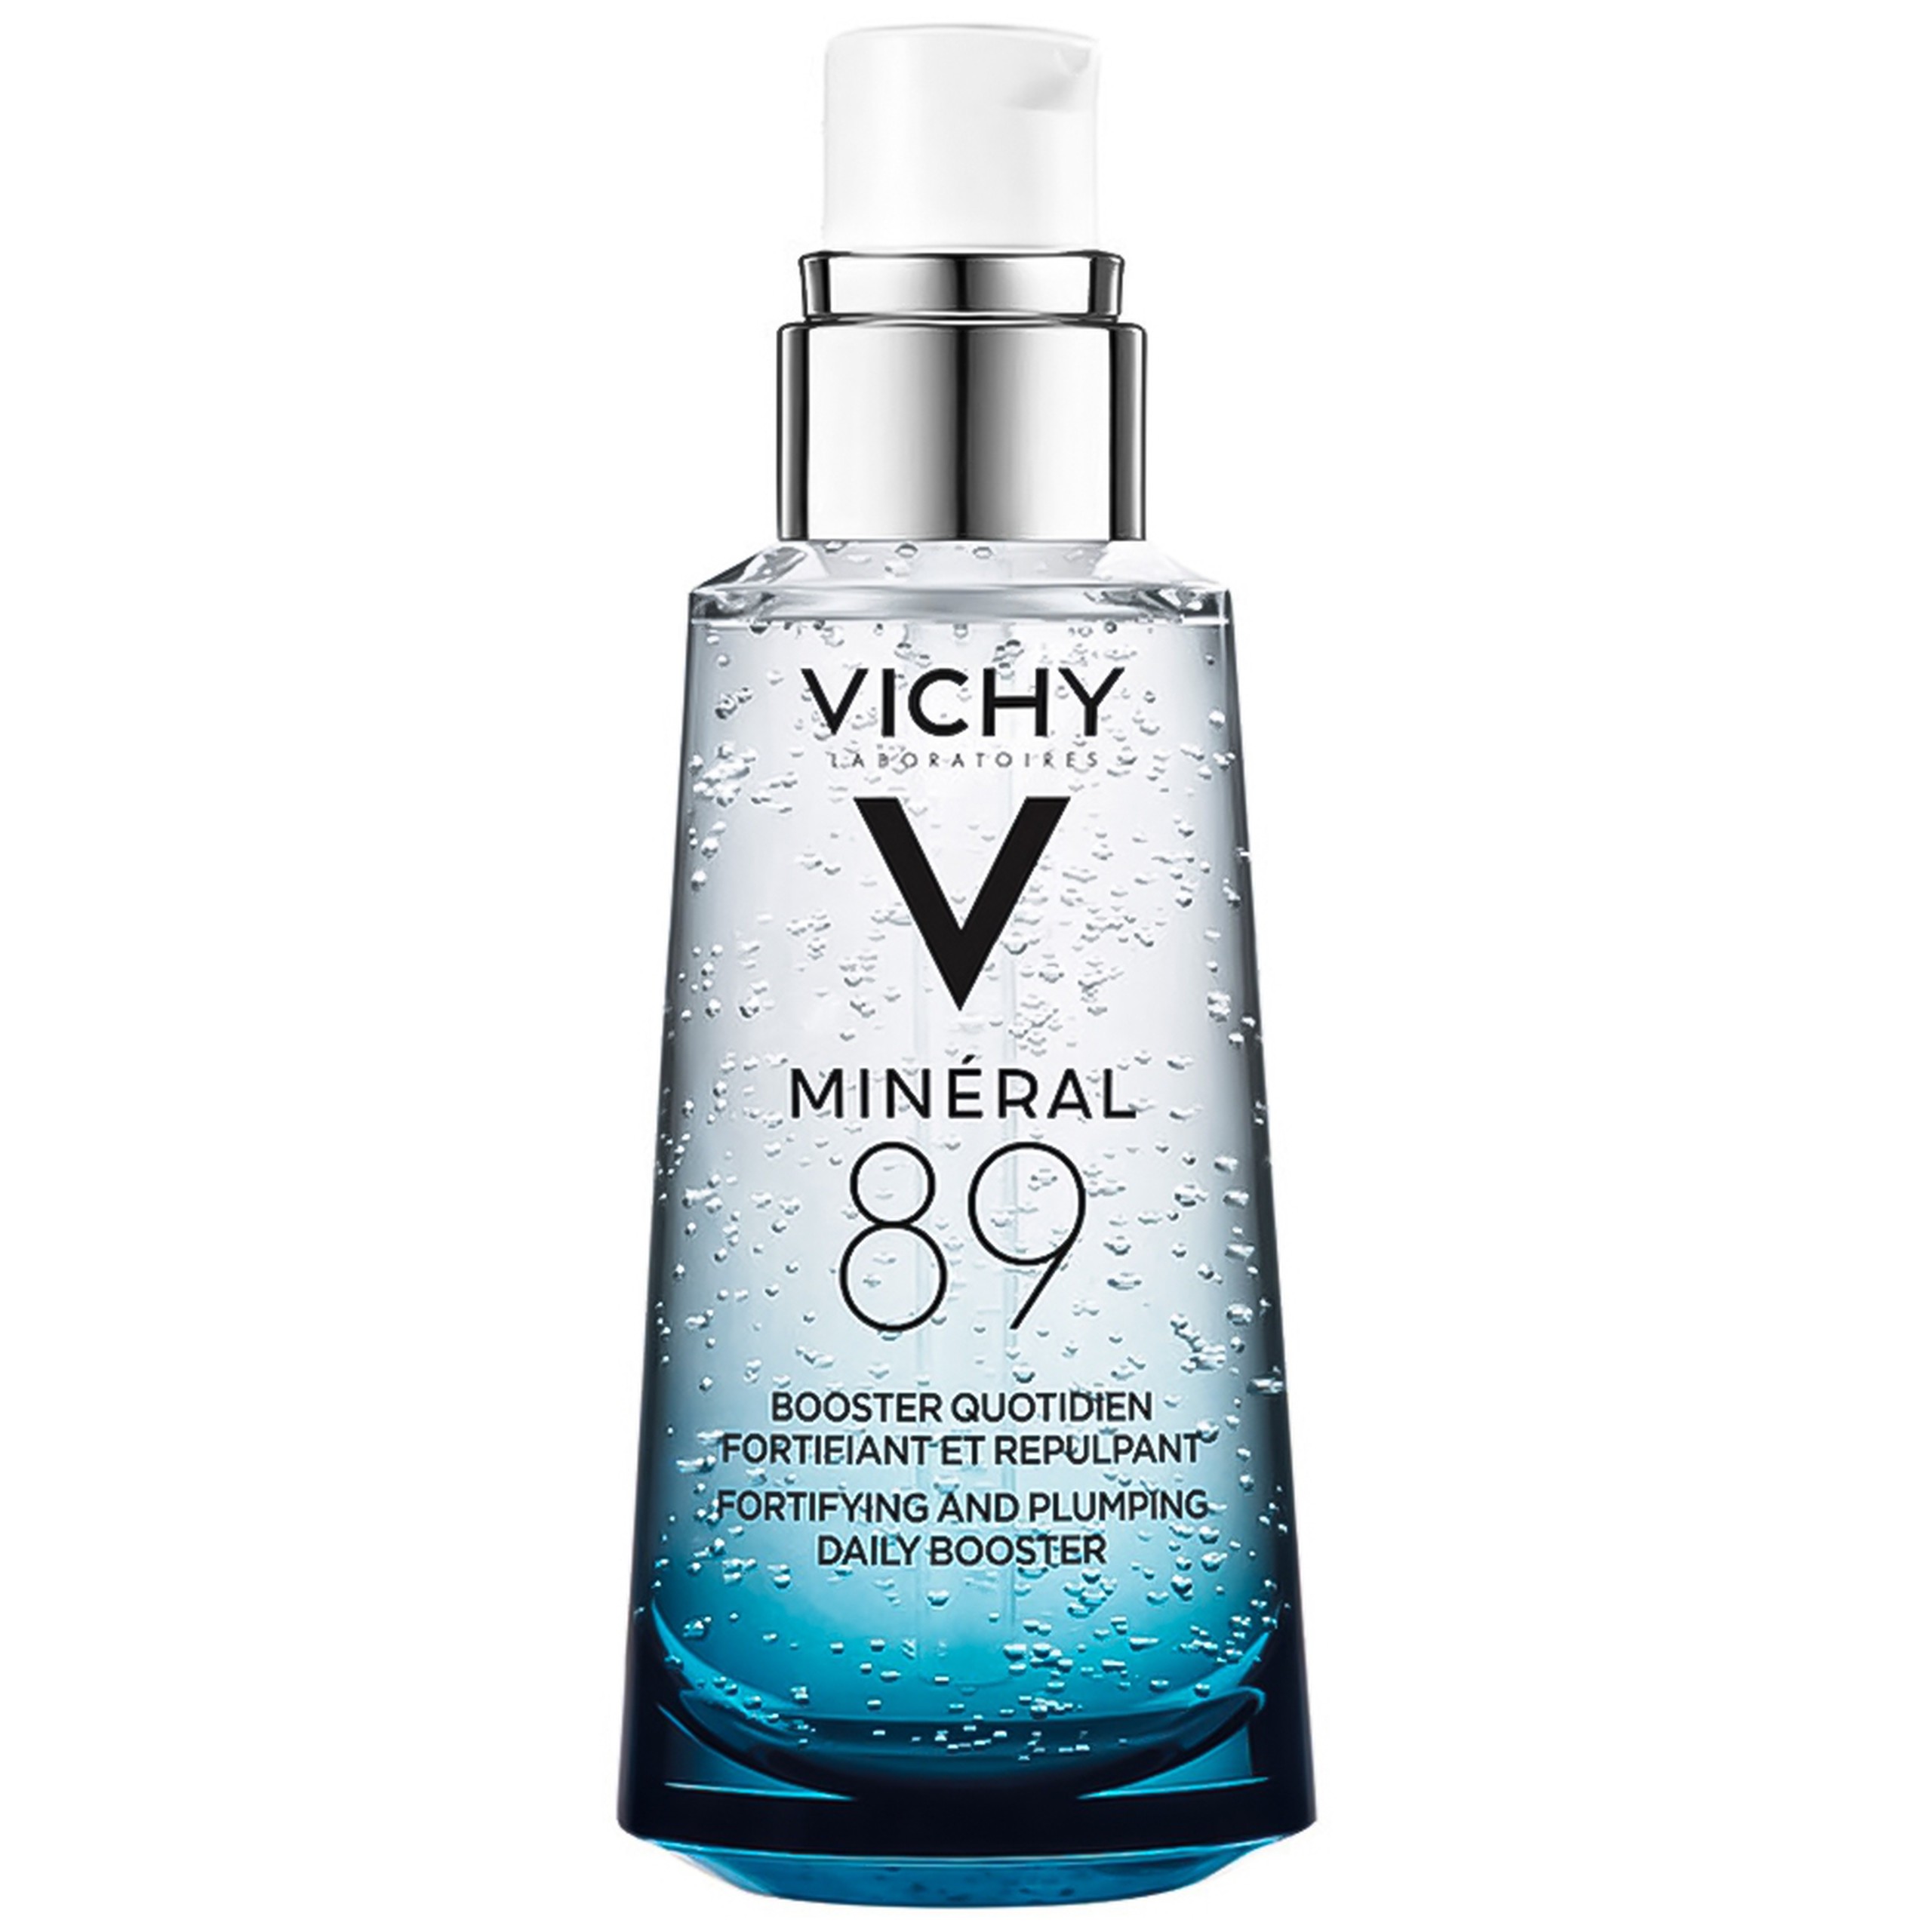 Serum Vichy Mineral 89 tăng cường khả năng phòng vệ của da cho da mềm mịn và căng mướt (1.5ml)